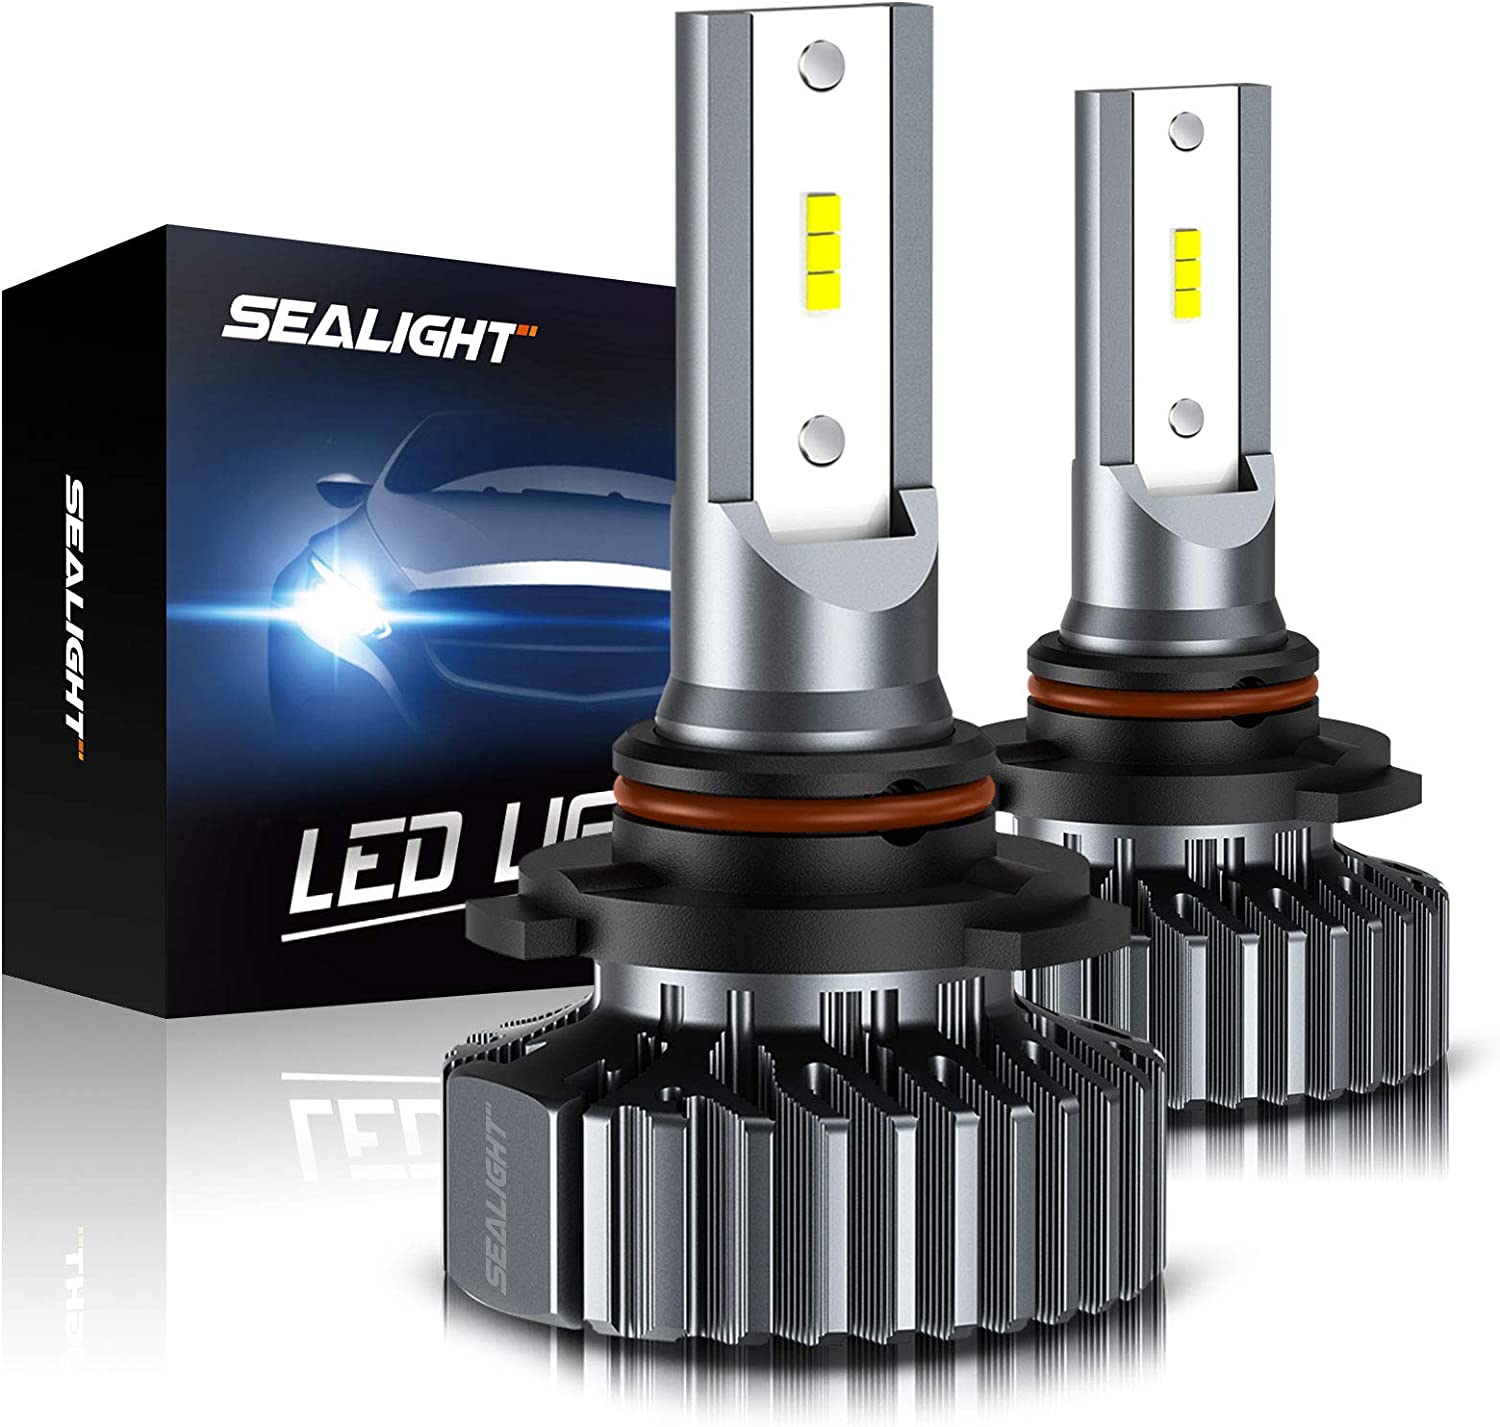 3 Best LED Headlight Bulbs